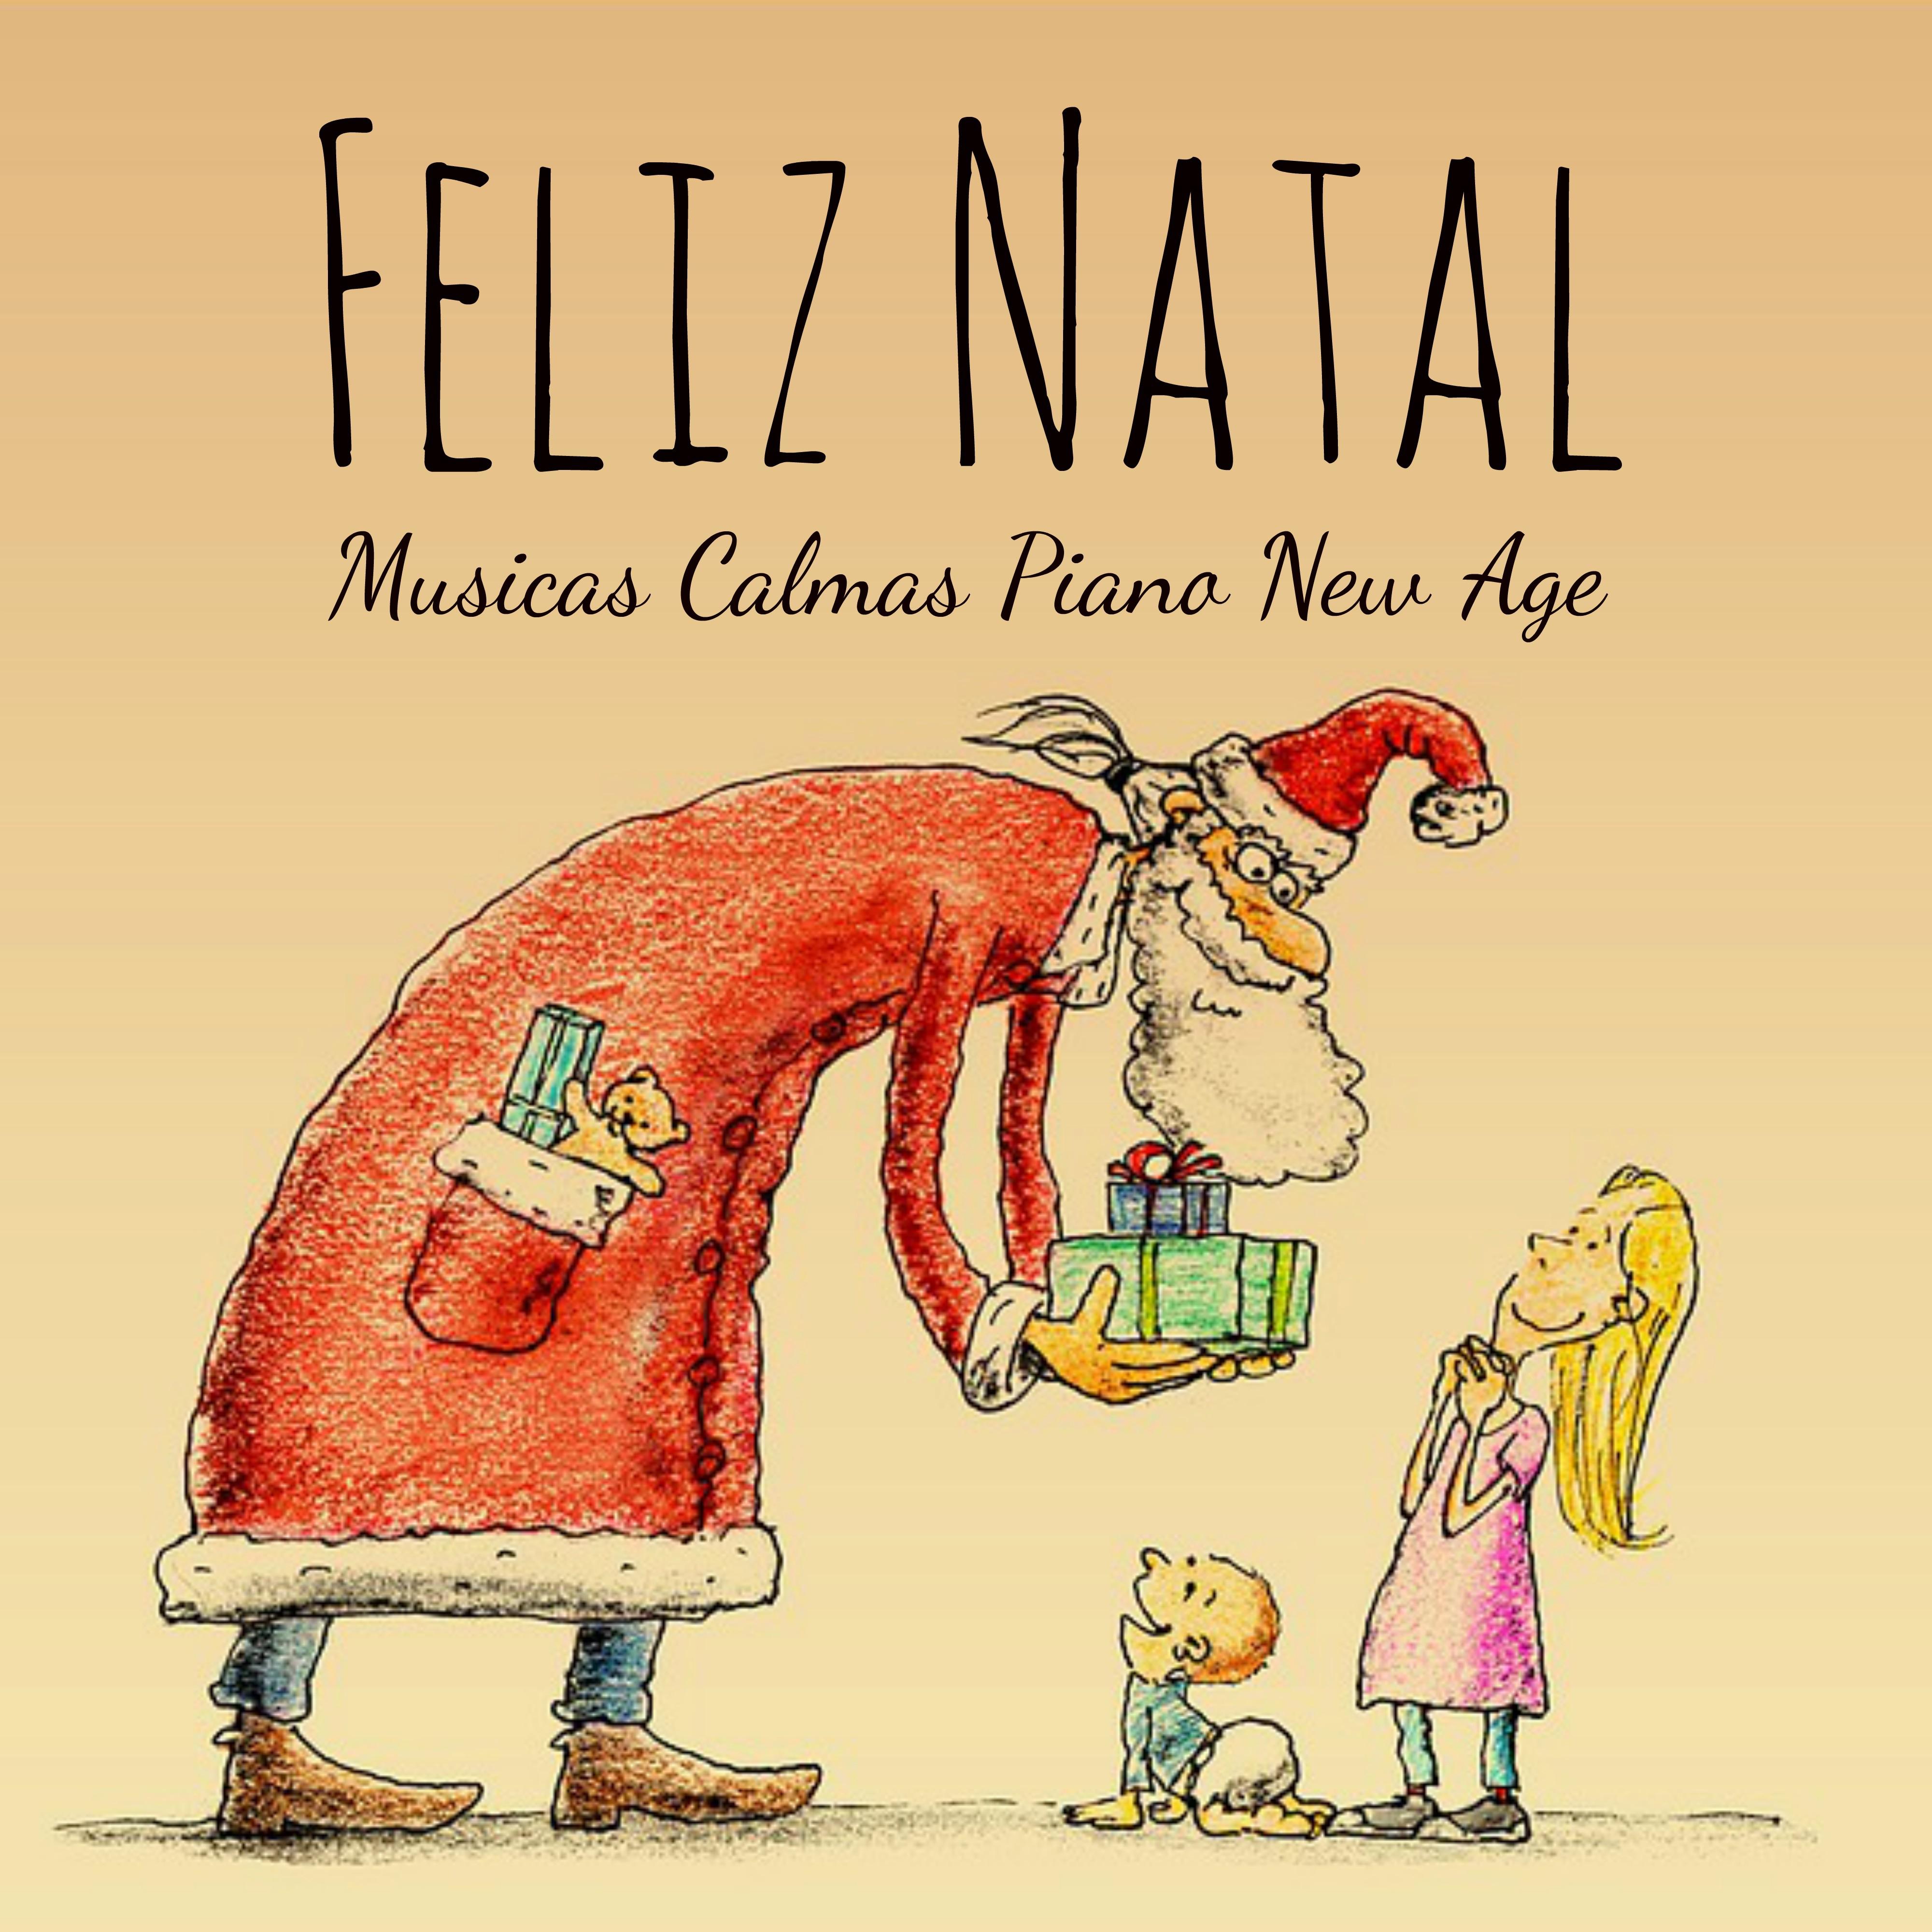 Feliz Natal  Musicas Calmas Piano New Age para Mensagens Natalinas Fe rias em Fami lia Medita o Mindfulness com Sons Naturales